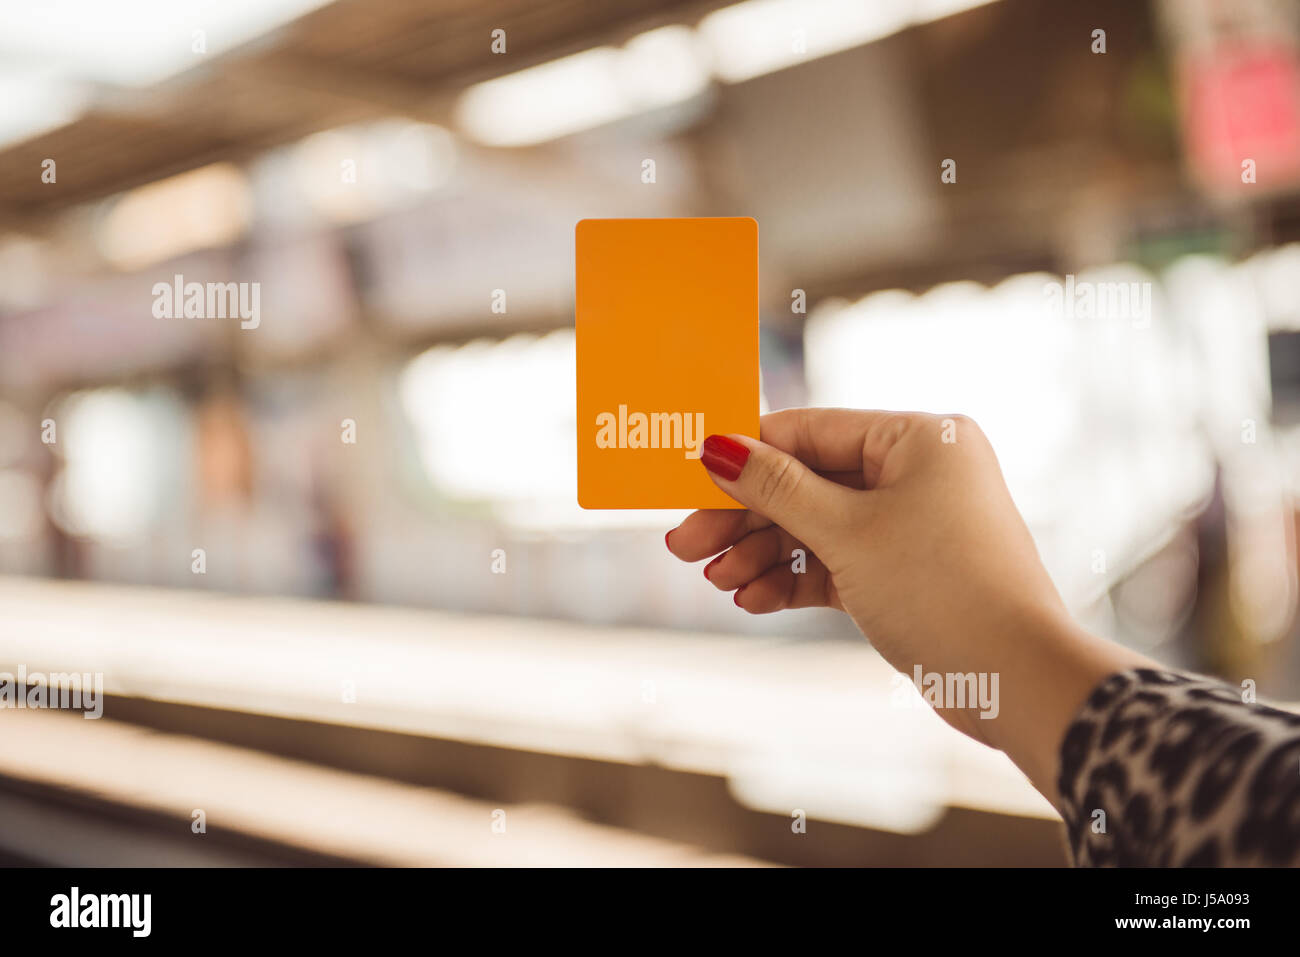 Donna mano azienda smartcard per mrt o treno su sfocati della stazione ferroviaria Foto Stock